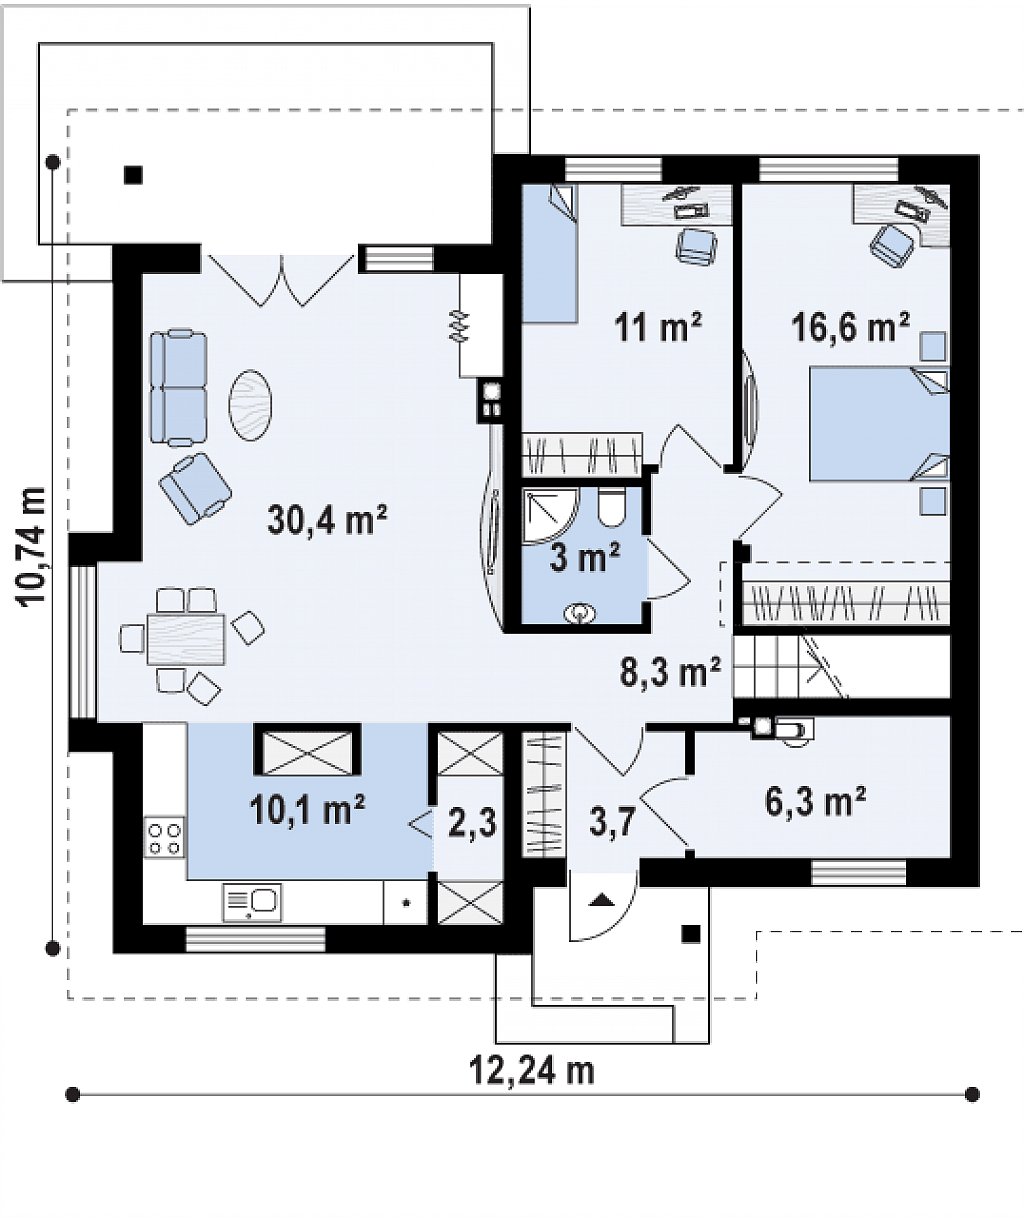 Удобный функциональный дом с двумя дополнительными комнатами на первом этаже. план помещений 1